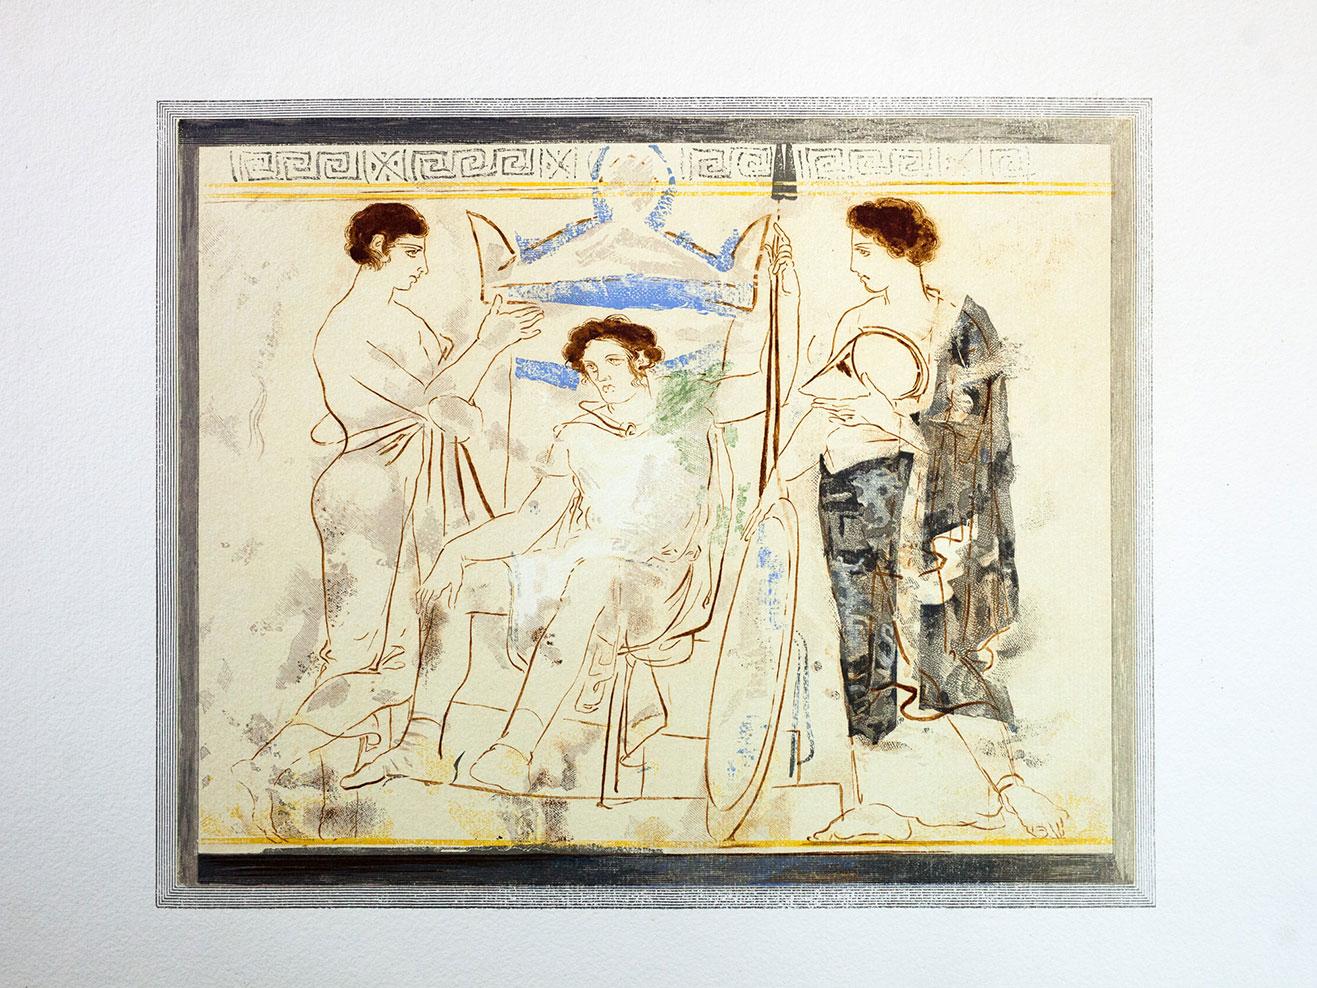 Ανάπτυγμα παράστασης από λευκή αττική λήκυθο, Γιάννης Κεφαλληνός, Δέκα λευκαί λήκυθοι του Μουσείου Αθηνών, Αθήνα 1956.